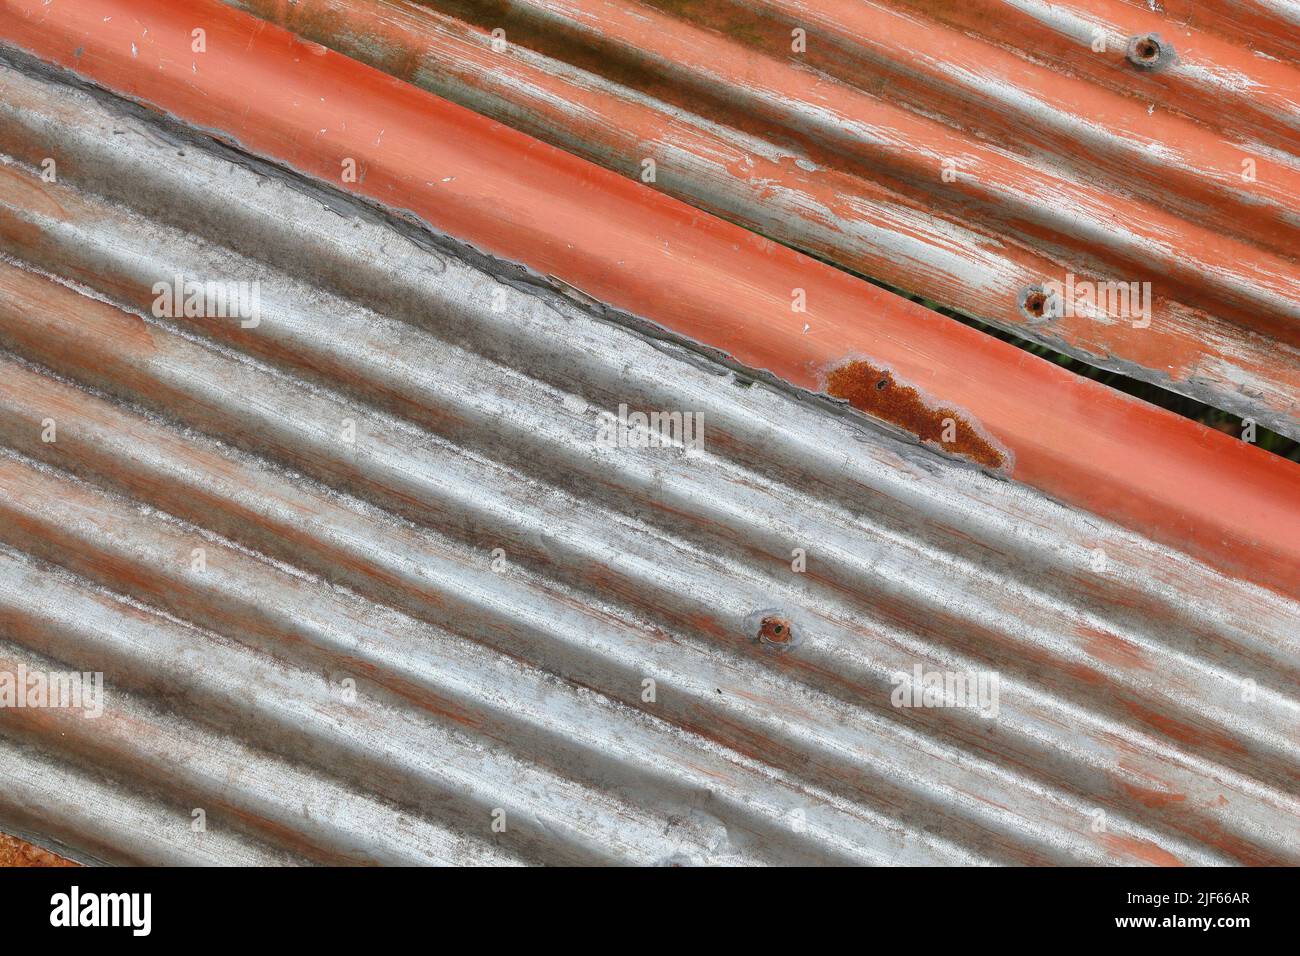 Industrielle Metalloberfläche im Hintergrund. Grungy Distressed rostigen Metall-Textur. Stockfoto